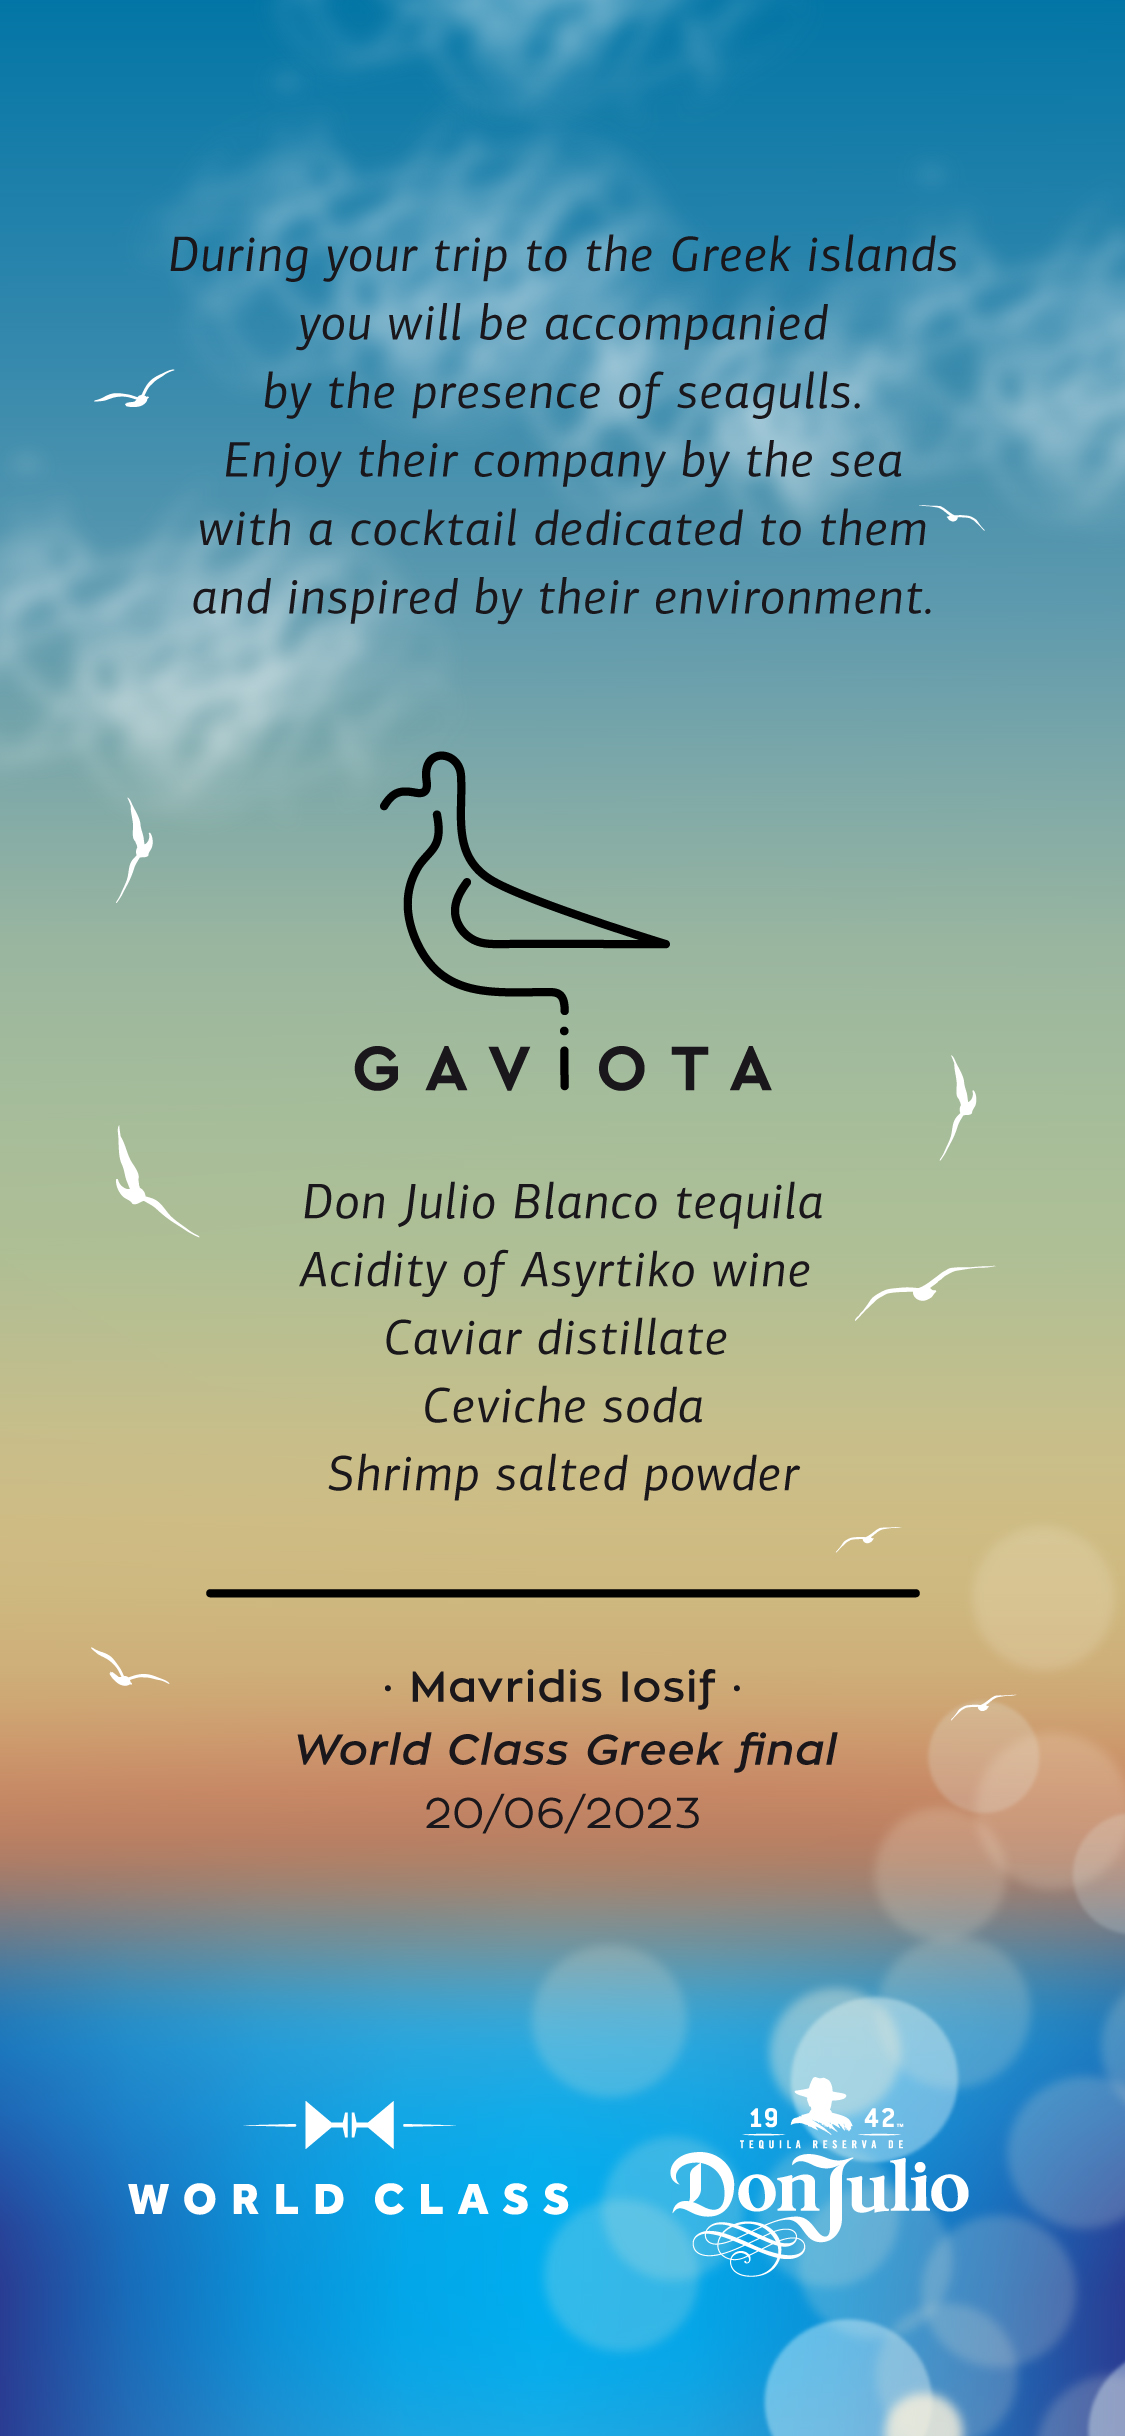 gaviota_menu_page2